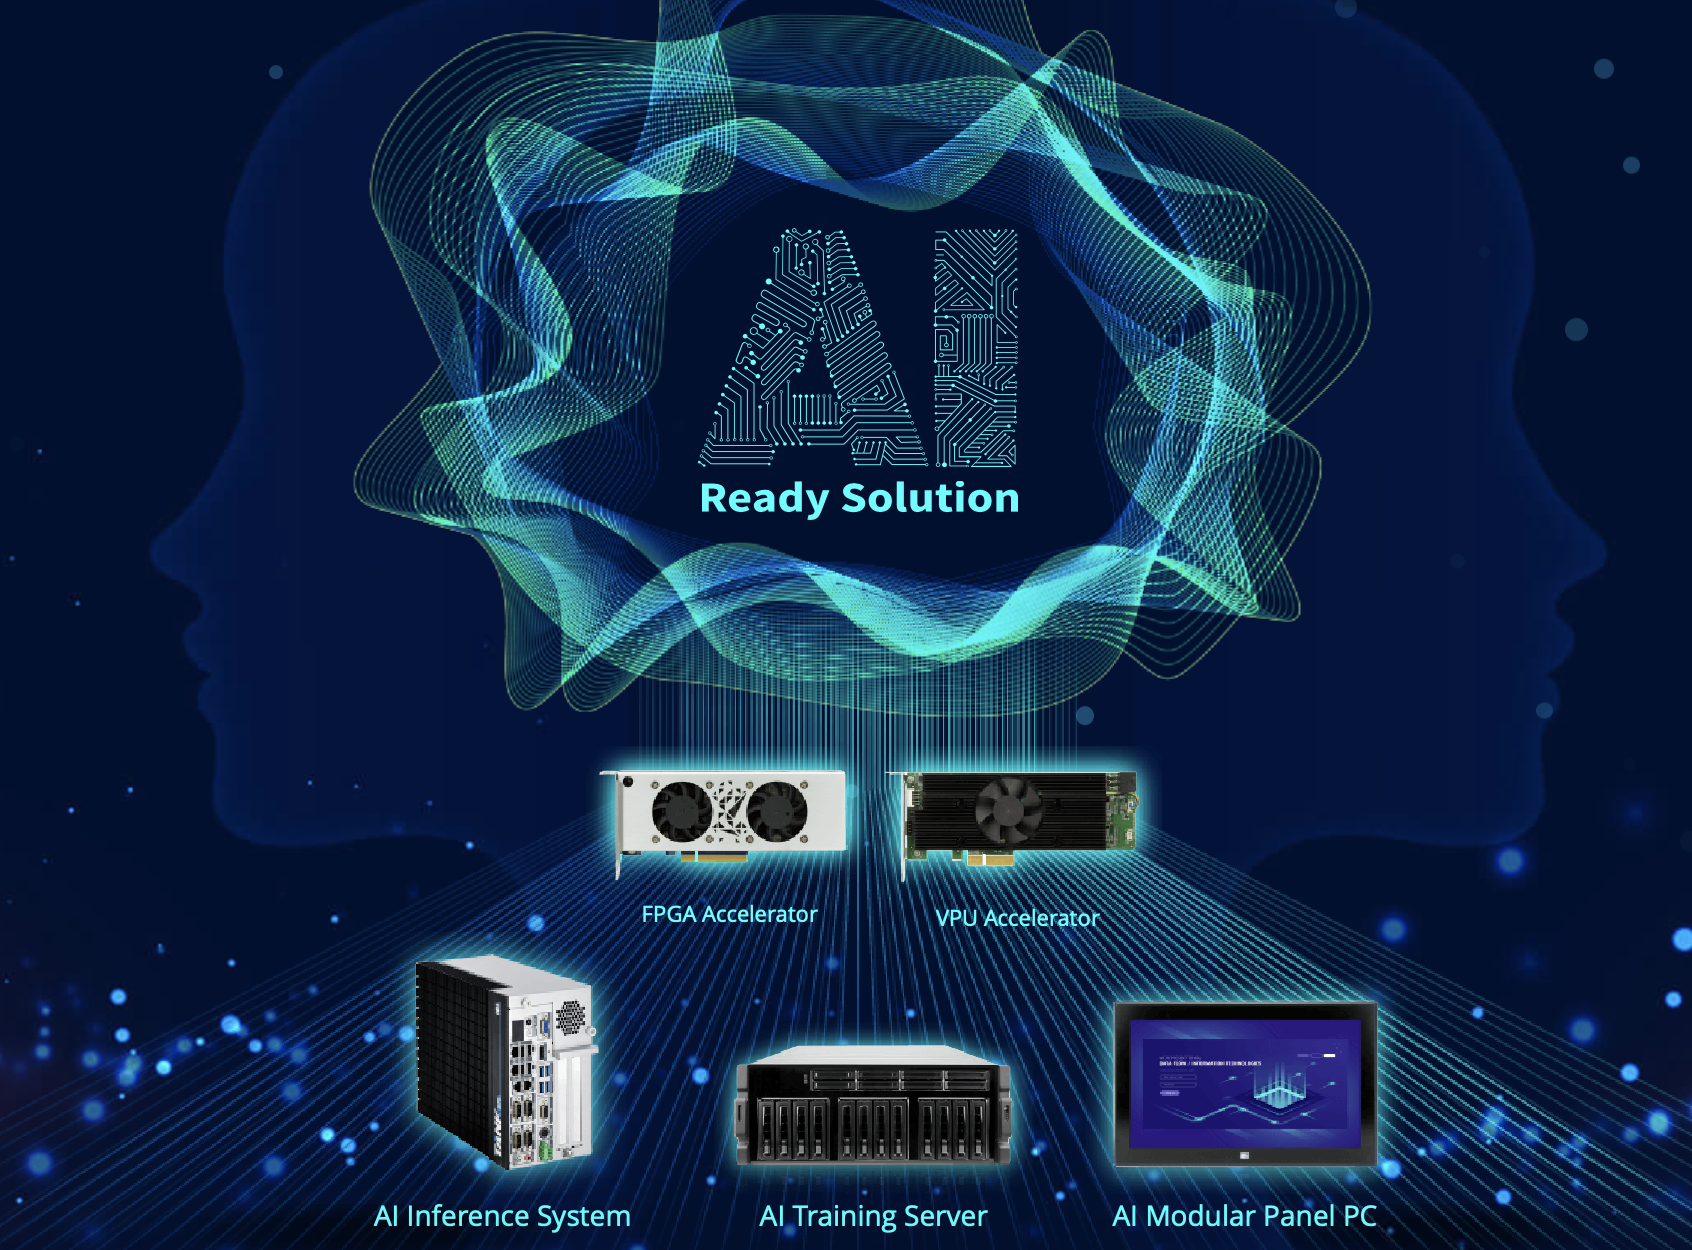 IEI: AI Ready Solution Accelerates Your AI Initiative